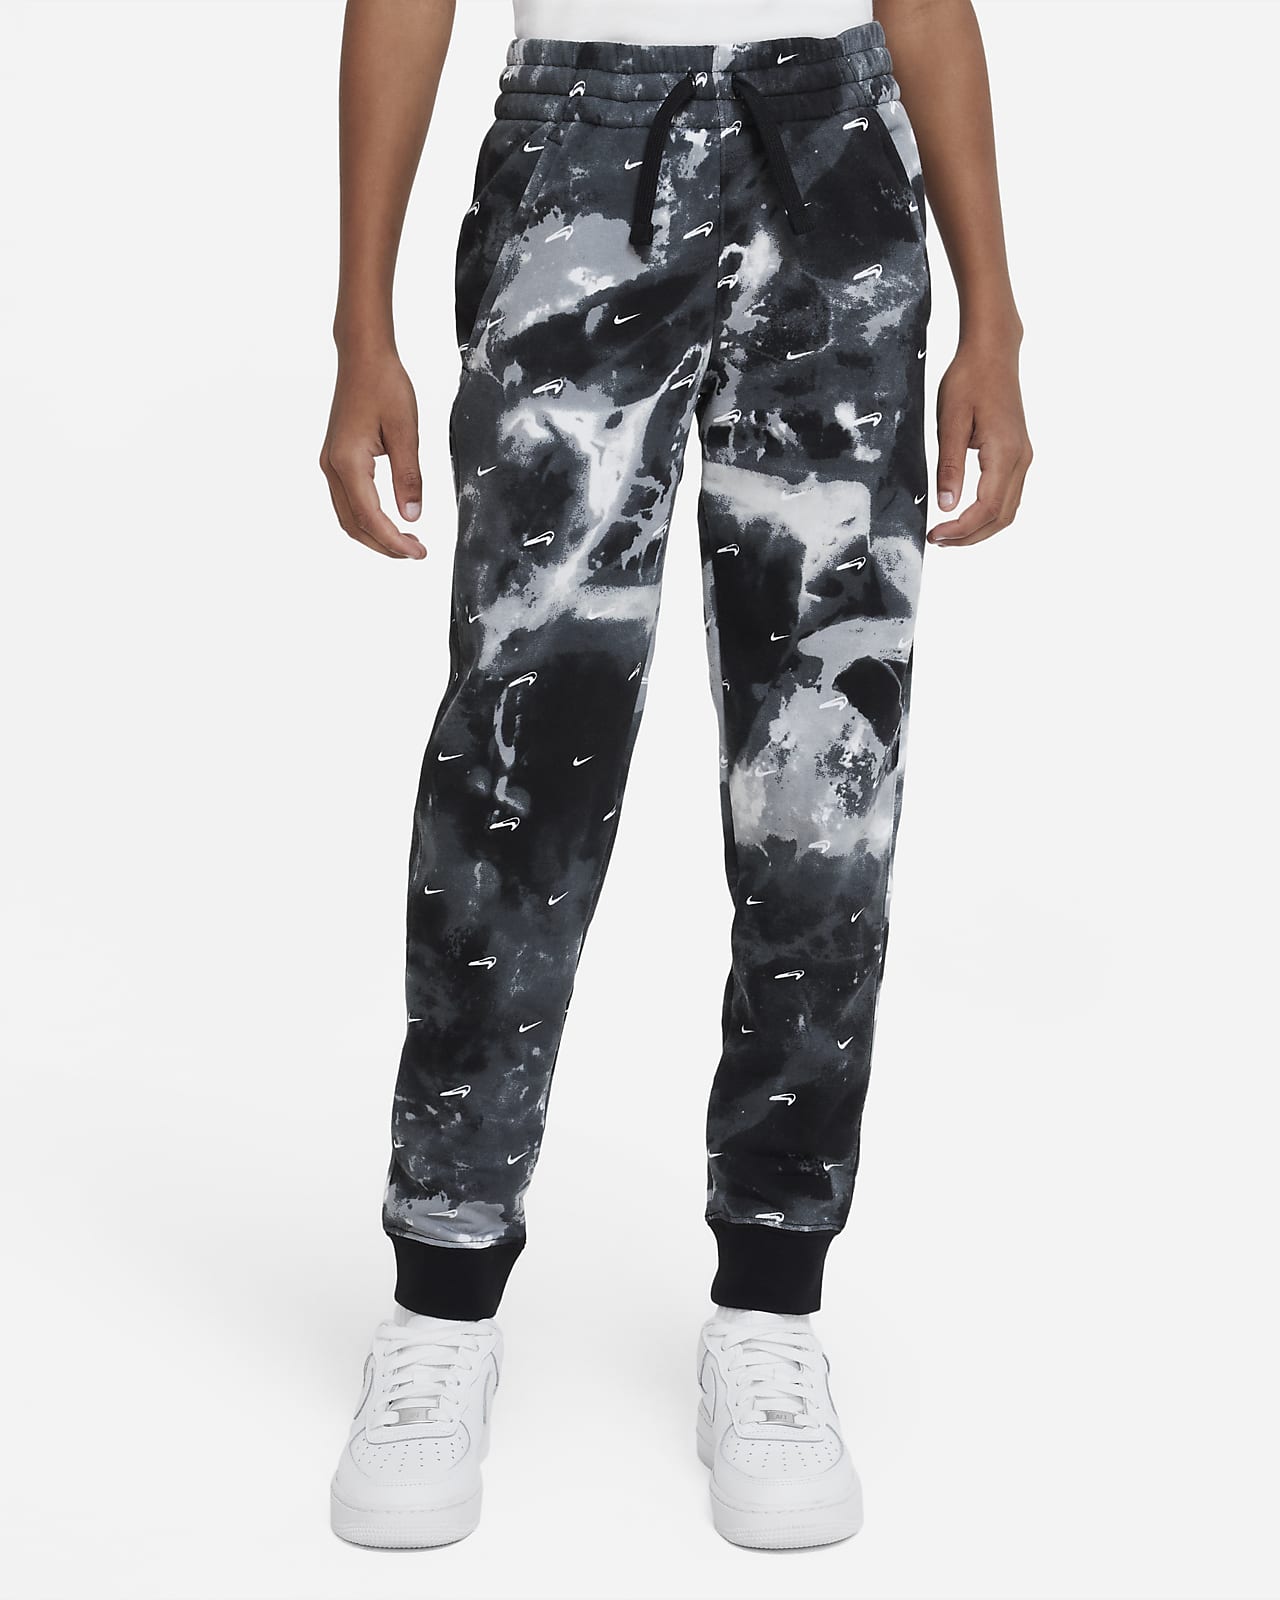 Pantalones de estampados para grande Sportswear Club Fleece. Nike.com